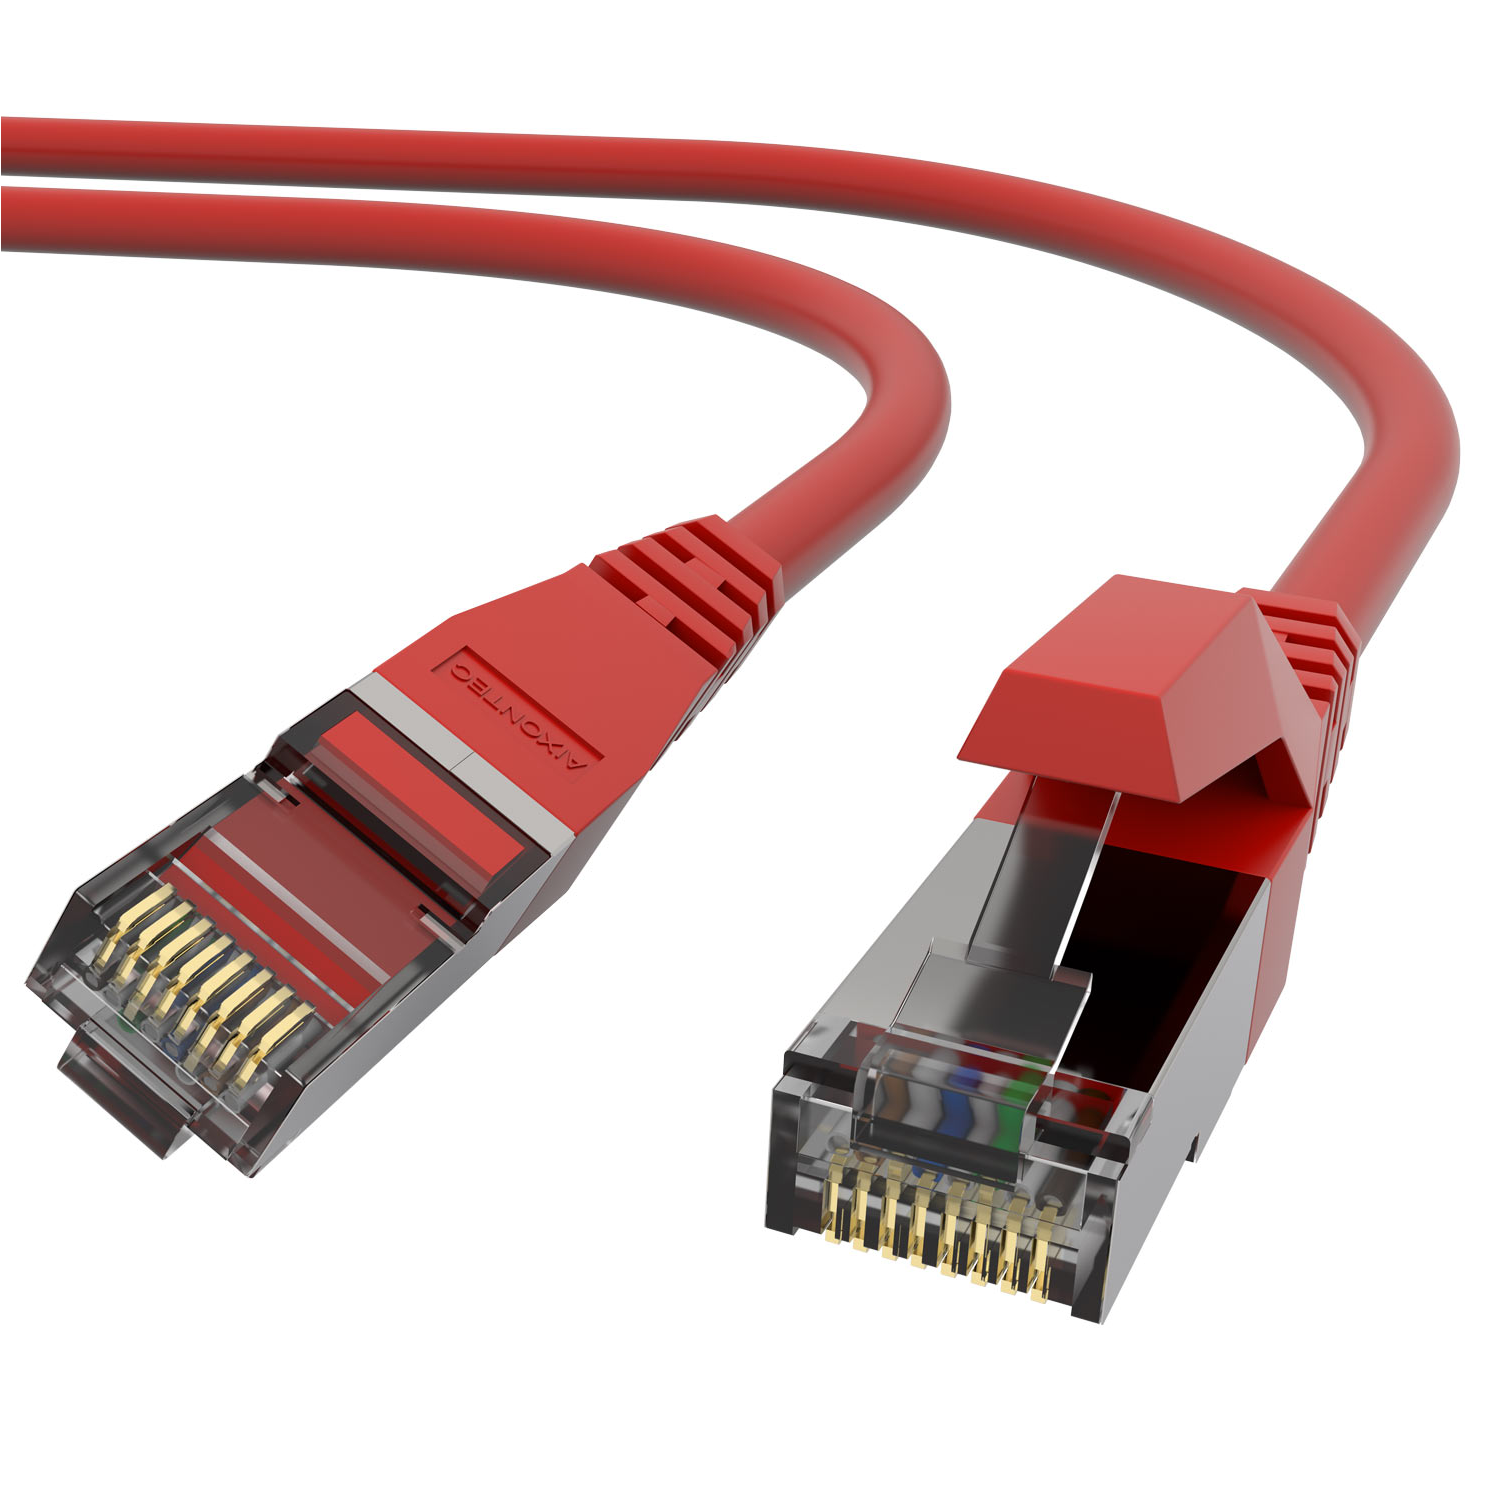 AIXONTEC 6,0m Cat.6 RJ45 Lankabel 10 Patchkabel Ethernetkabel Gigabit, m 6,0 Netzwerkkabel